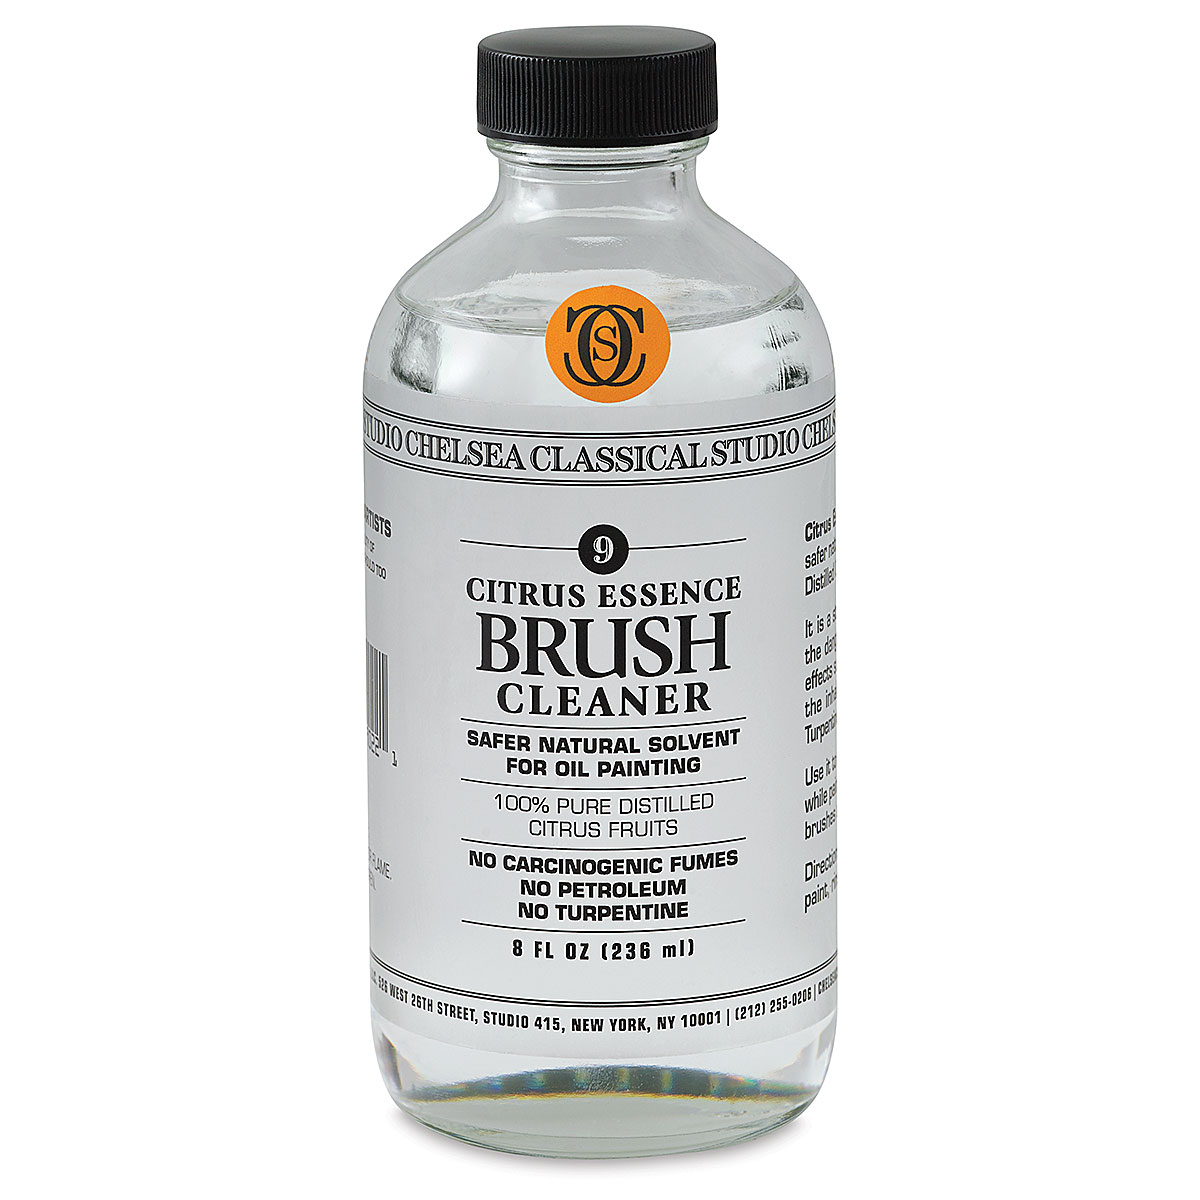 Chelsea Classical Studio : Citrus Essence Brush Cleaner